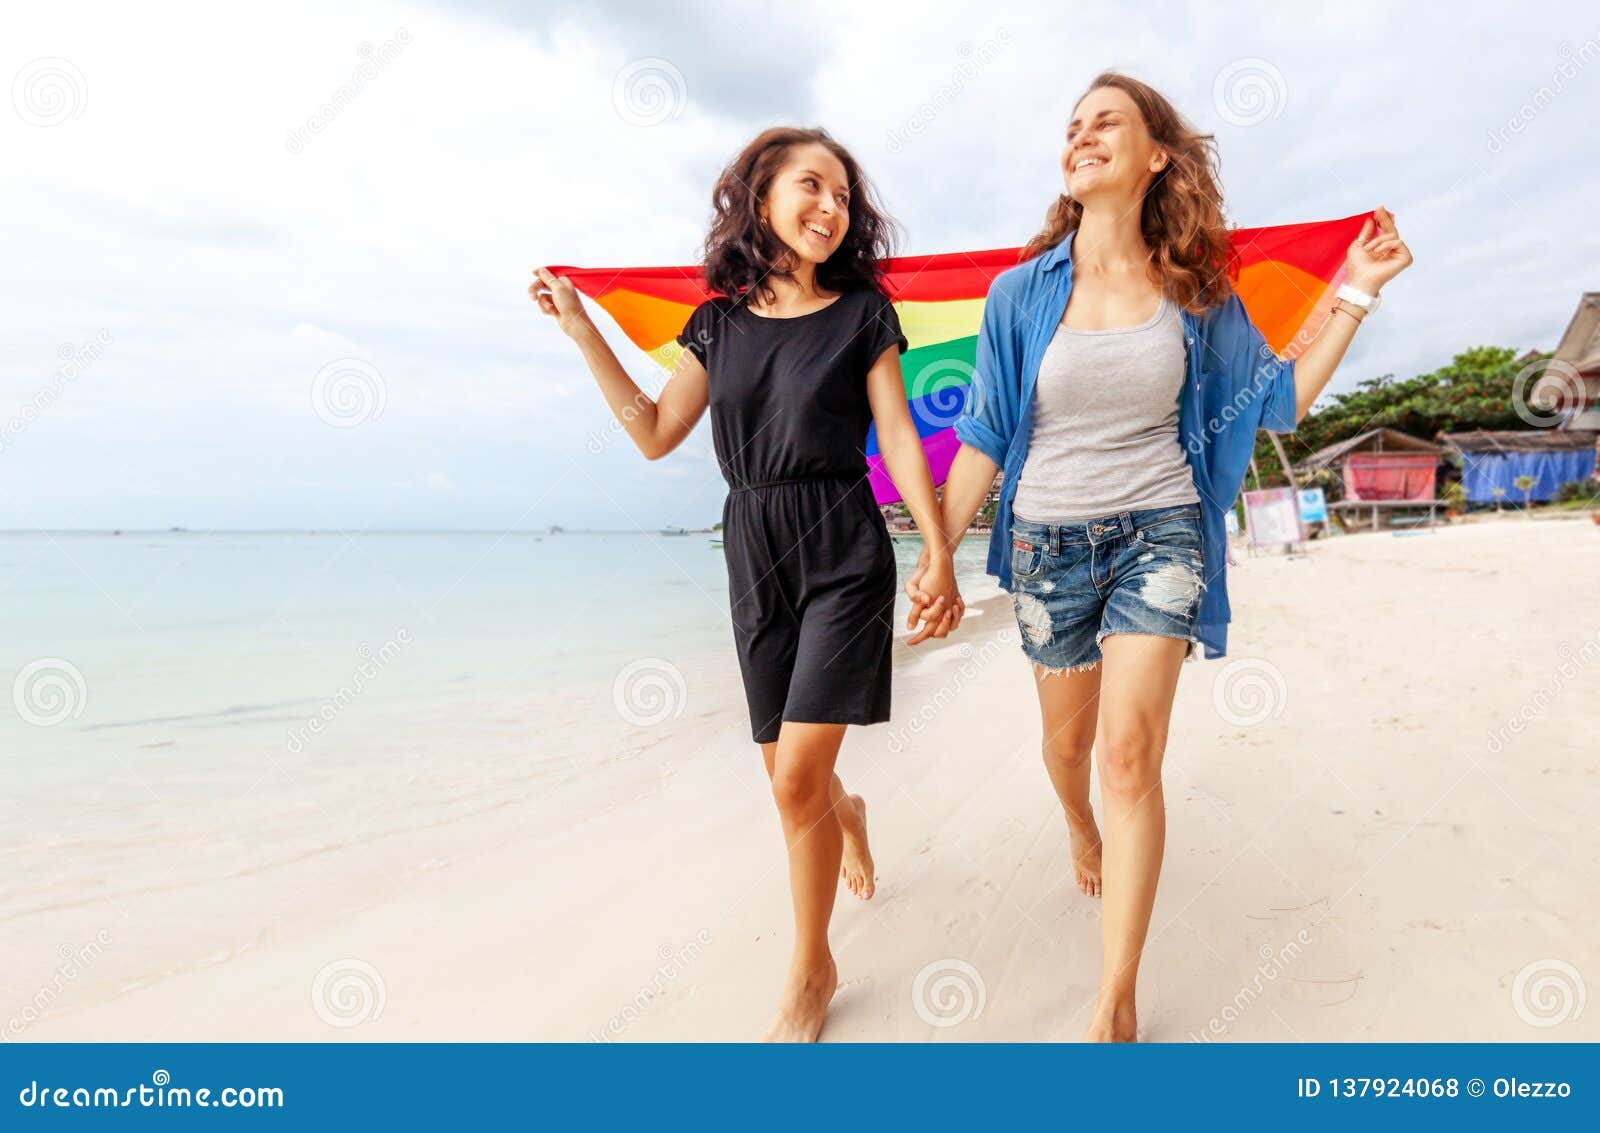 爱情白天一对年轻情侣沙滩拥抱转圈圈摄影图配图高清摄影大图-千库网